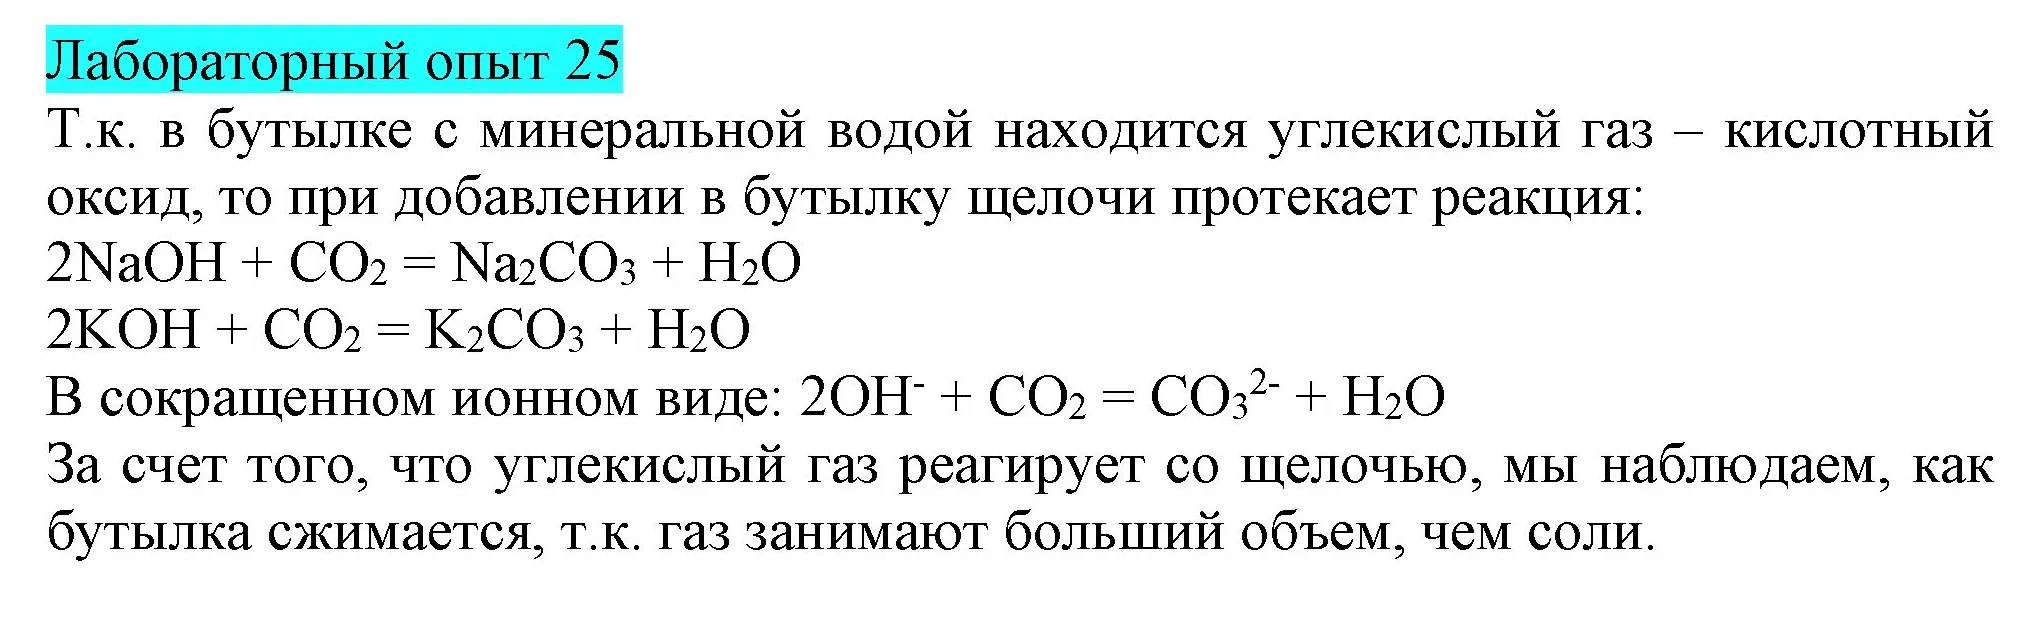 Решение  Лабораторный опыт №25 (страница 43) гдз по химии 9 класс Габриелян, Остроумов, учебник